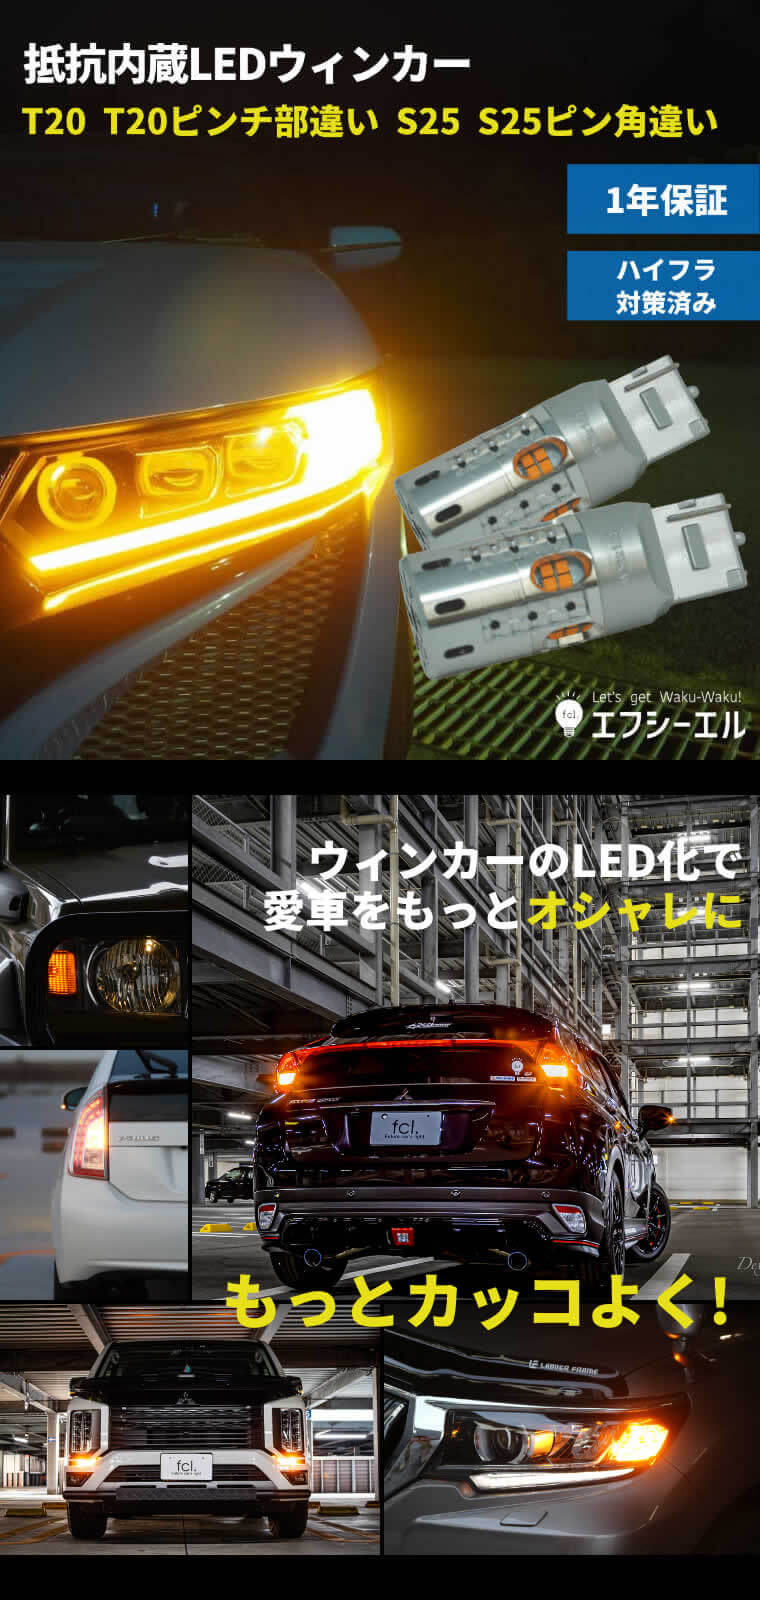 抵抗内蔵LEDバルブ S25ピン角違い150度 LEDウインカー【公式通販】fcl. 車のLED専門店